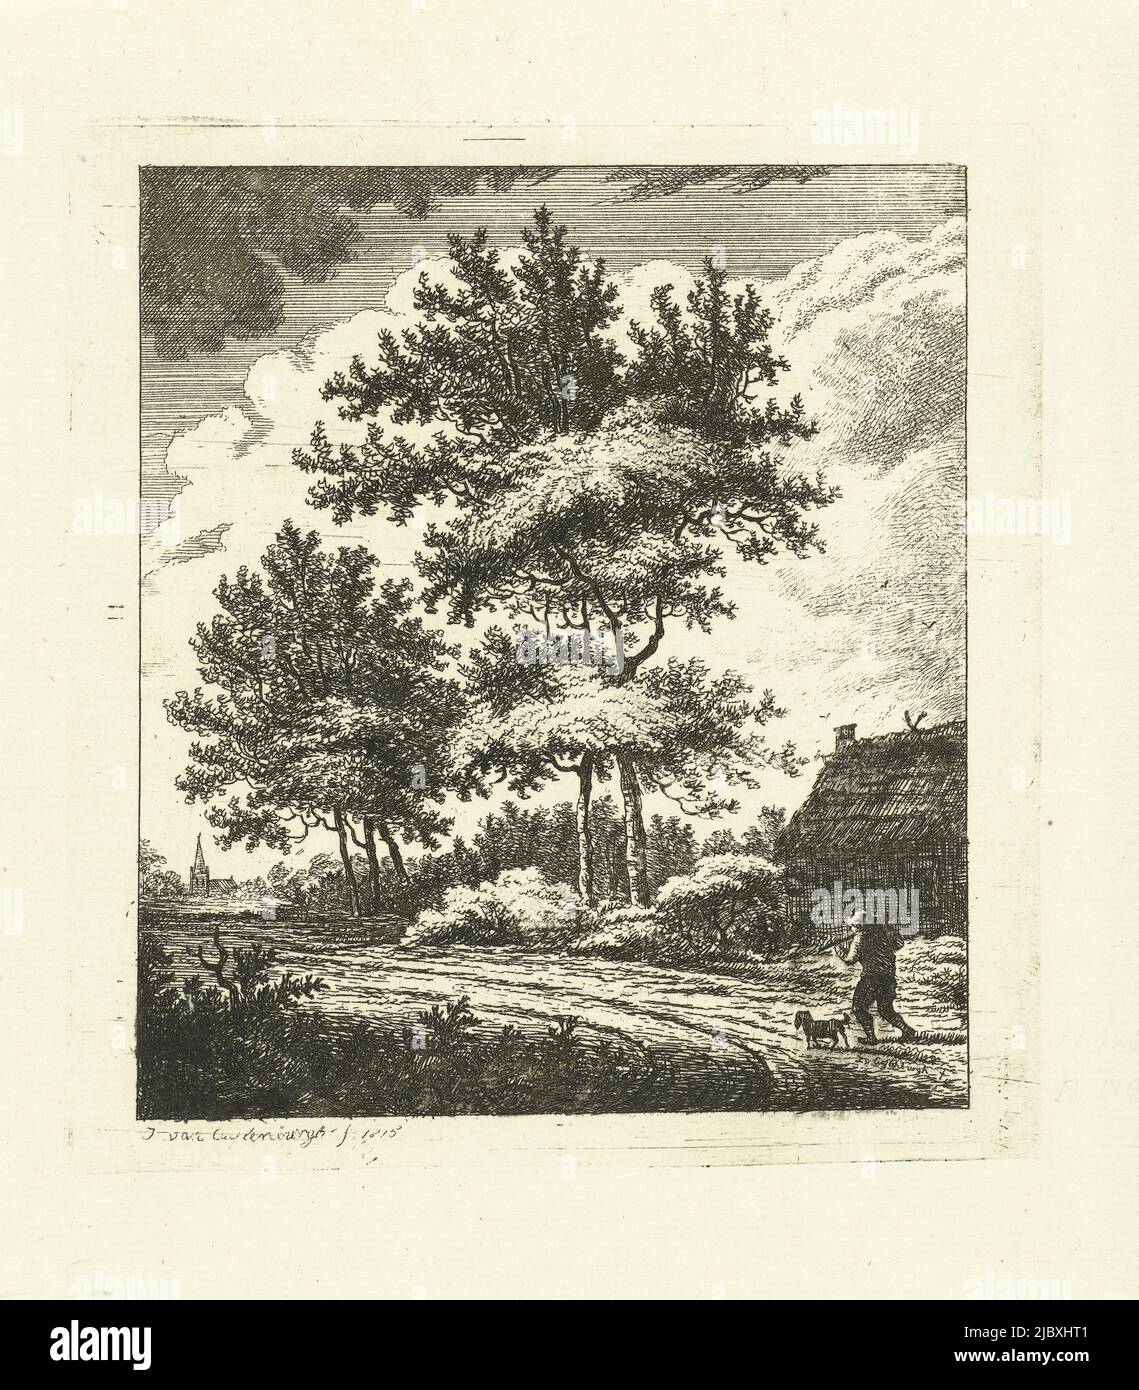 Paesaggio con strada di campagna, tipografia: Johannes van Cuylenburgh, (menzionato sull'oggetto), Johannes van Cuylenburgh, Paesi Bassi, 1815, carta, incisione, h 137 mm x l 128 mm Foto Stock